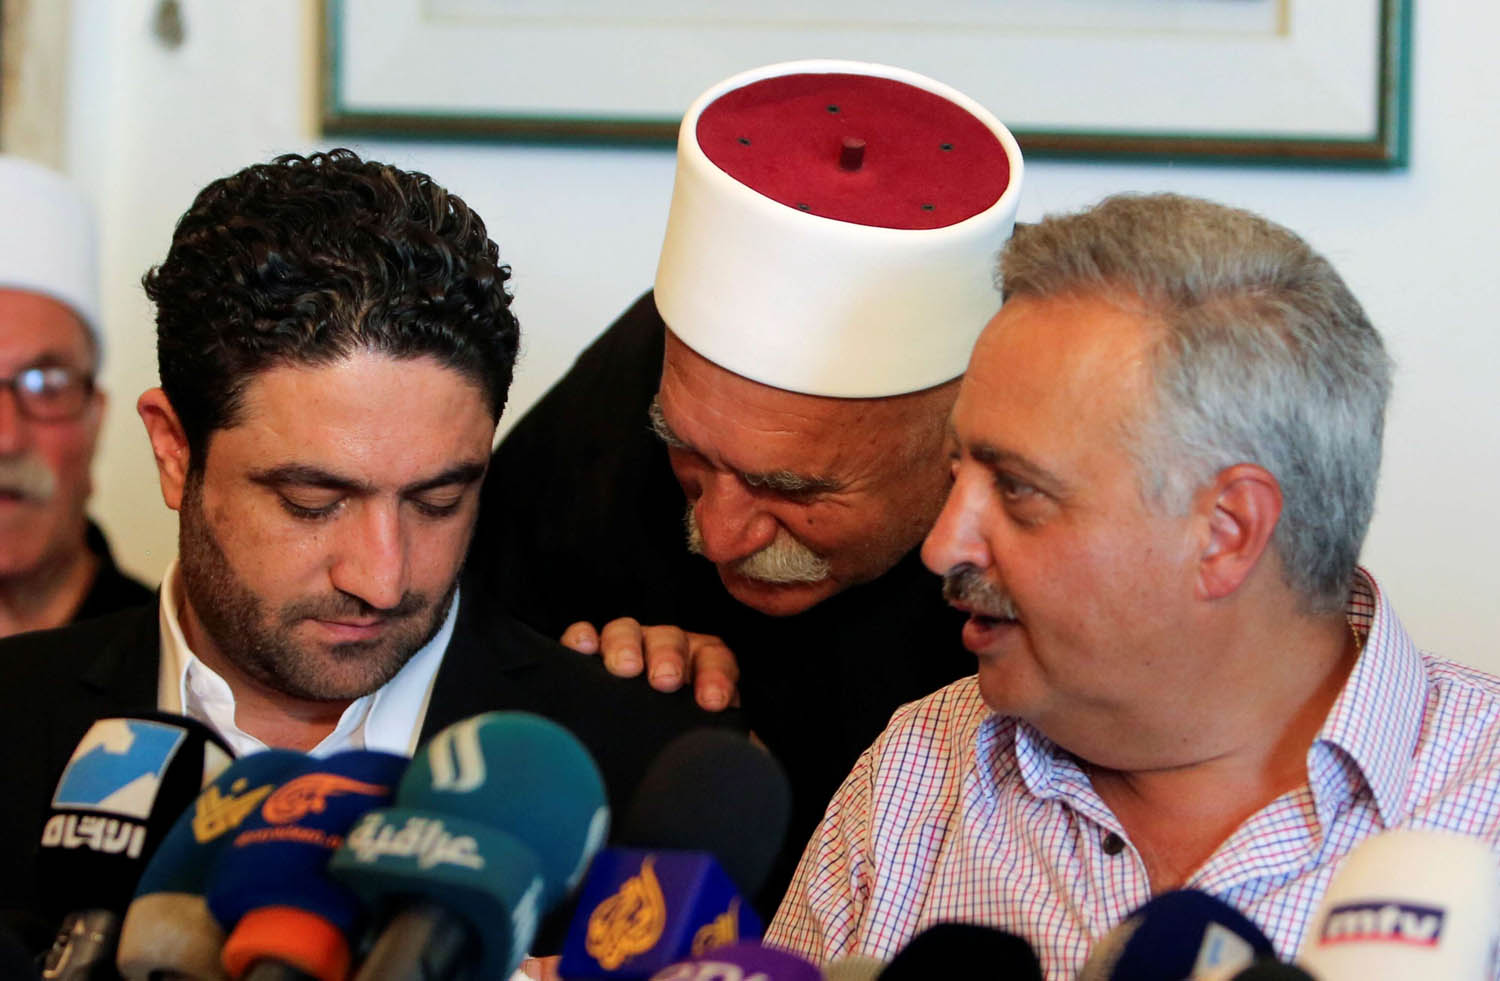 شيخ درزي يتحدث إلى الوزير صالح الغريب بحضور الزعيم الدرزي طلال أرسلان في مؤتمر صحفي في الخالدة